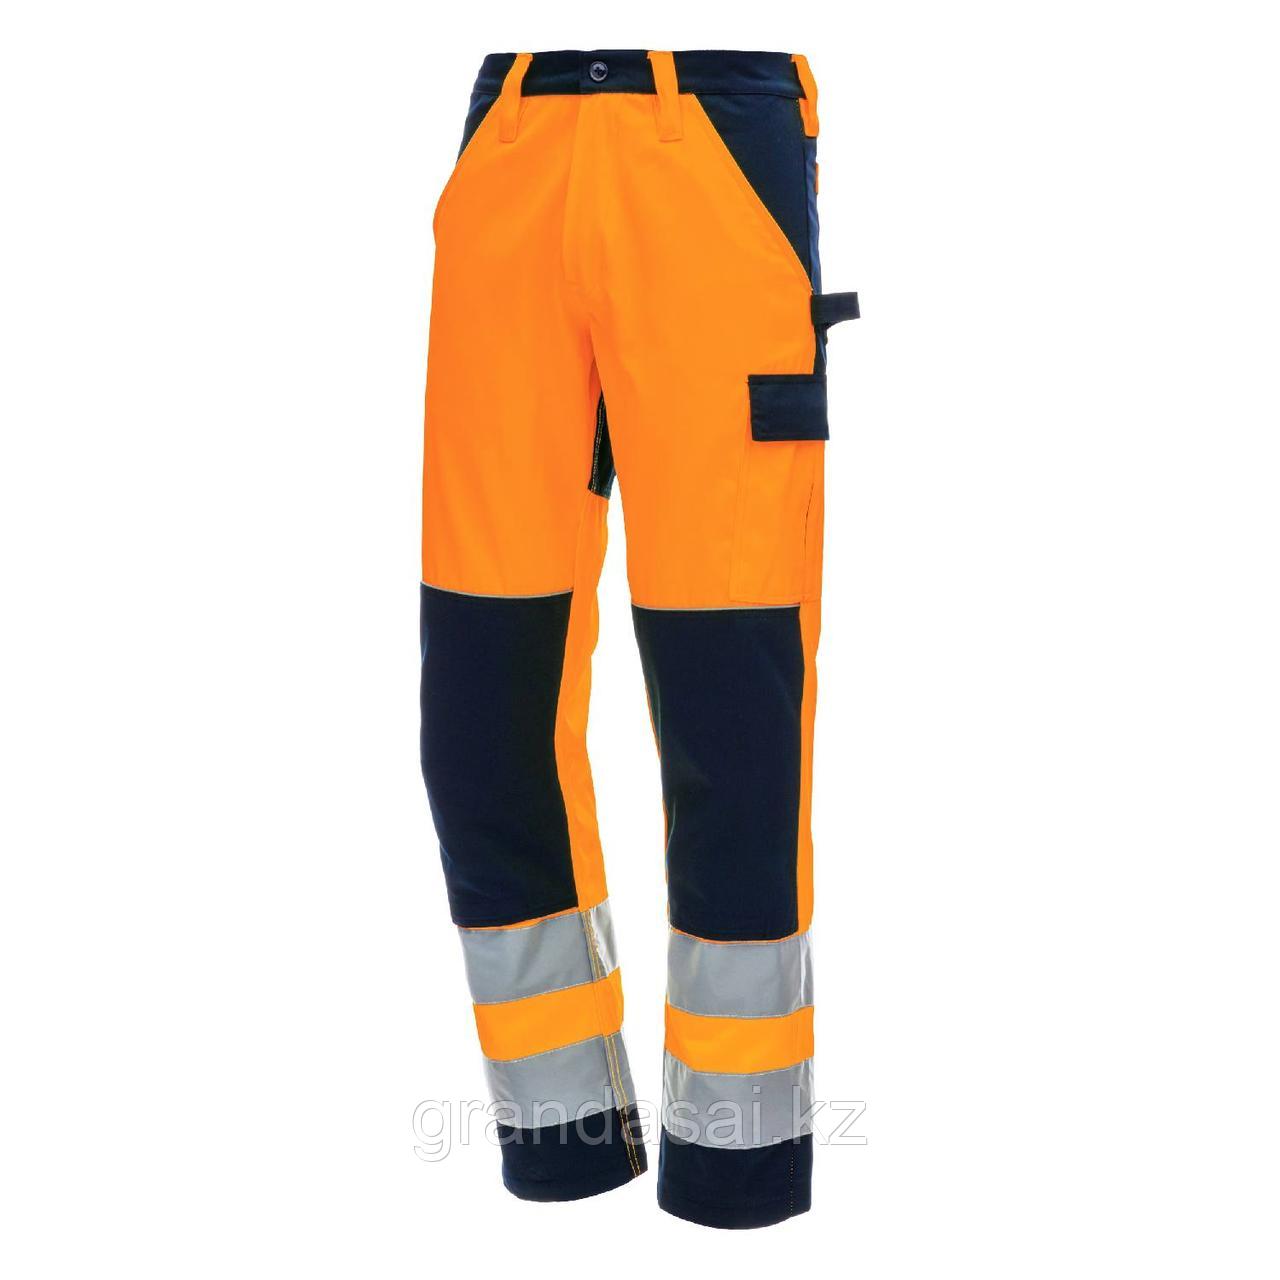 NITRAS 7571 рабочие брюки повышенной видимости, оранжевый / темно-синий